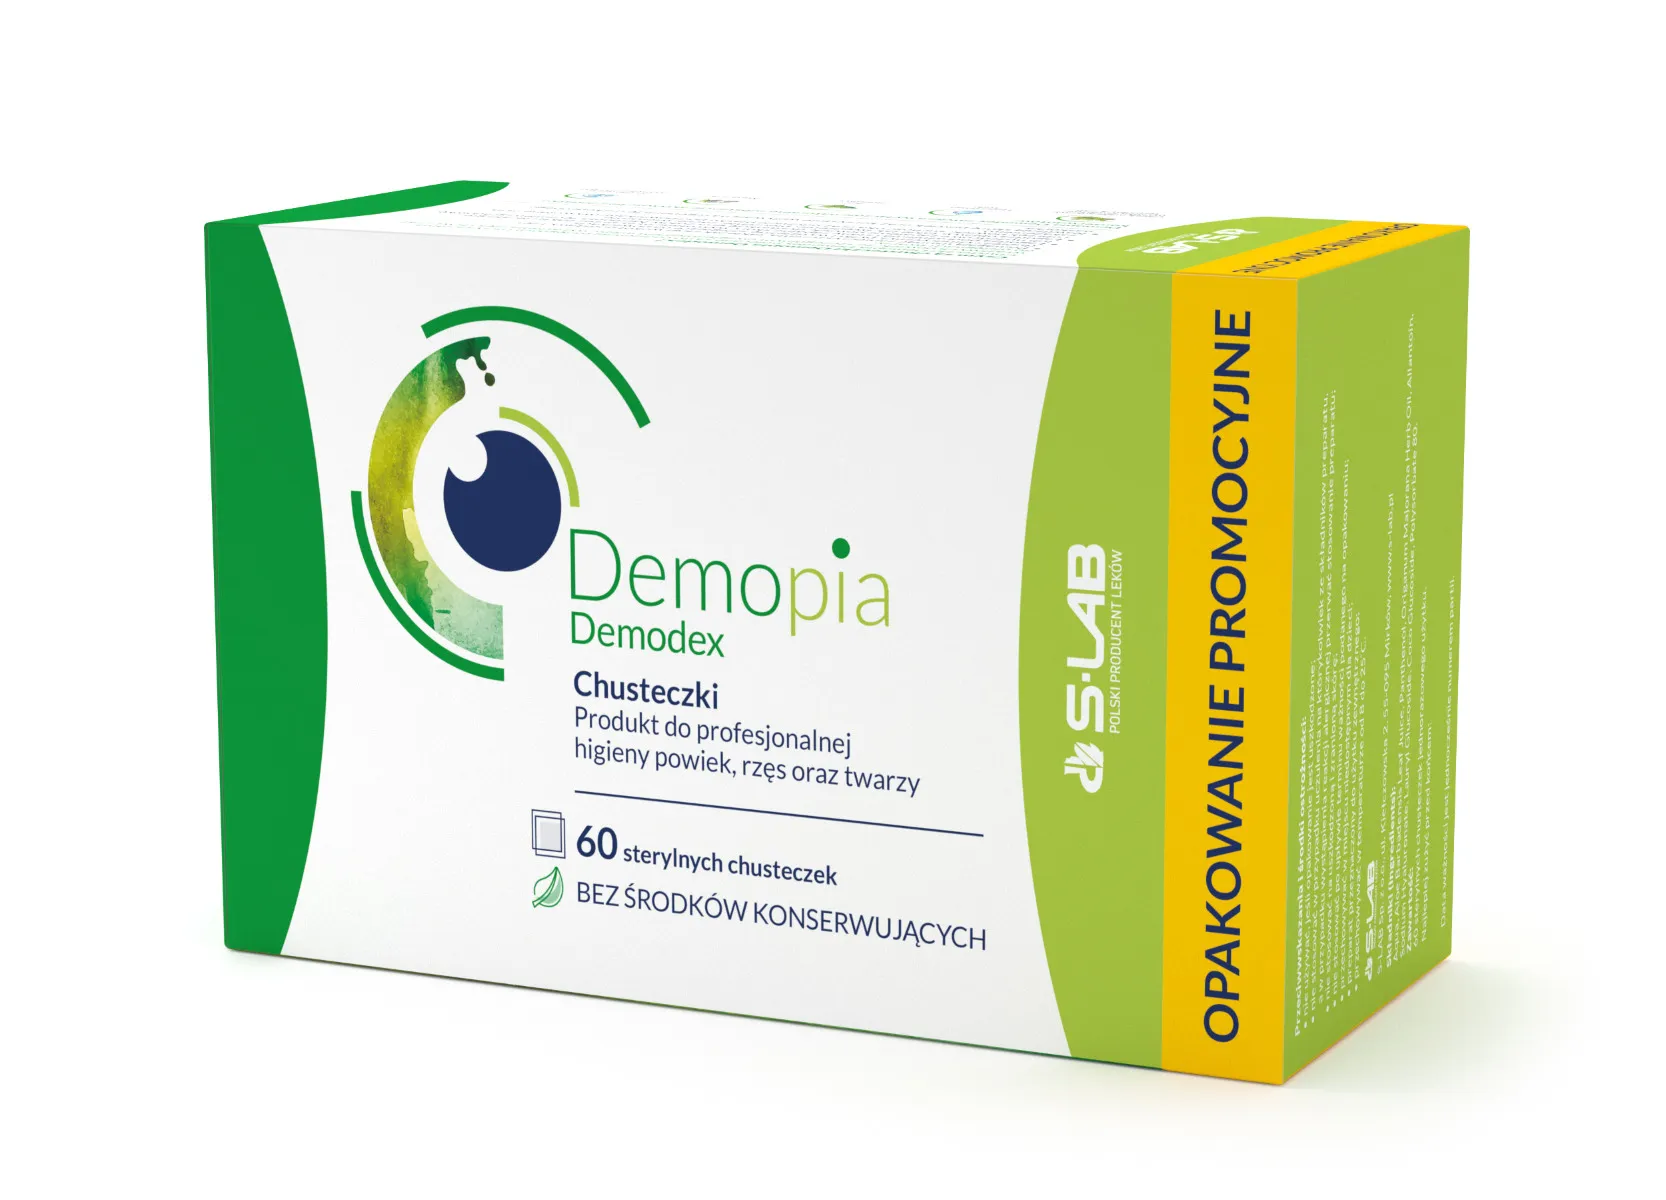 Demopia Demodex, chusteczki, 60 sztuk